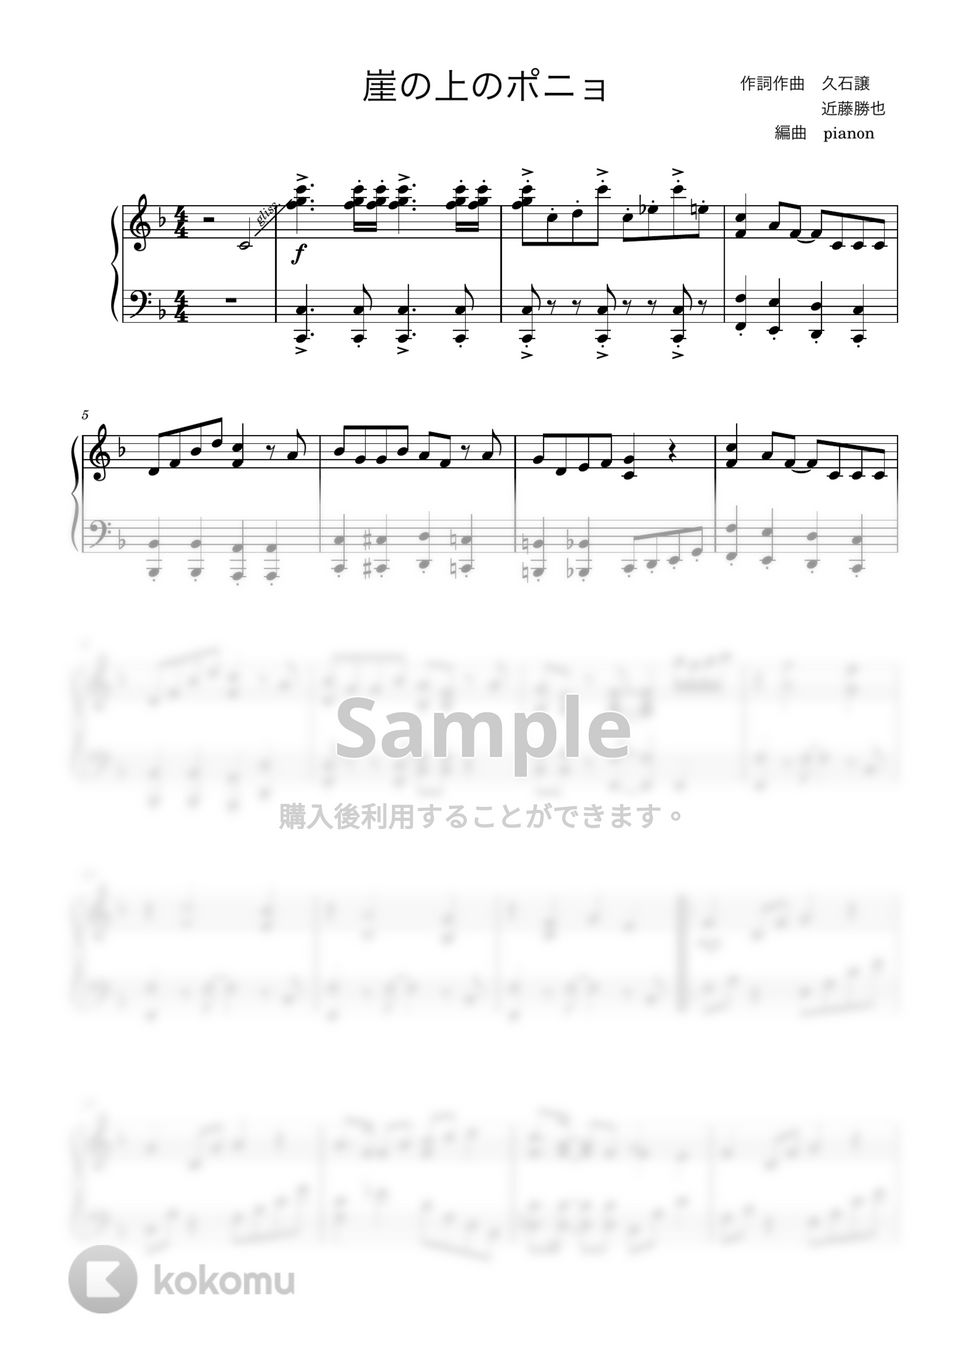 久石譲 - 崖の上のポニョ (ピアノ上級ソロ) by pianon